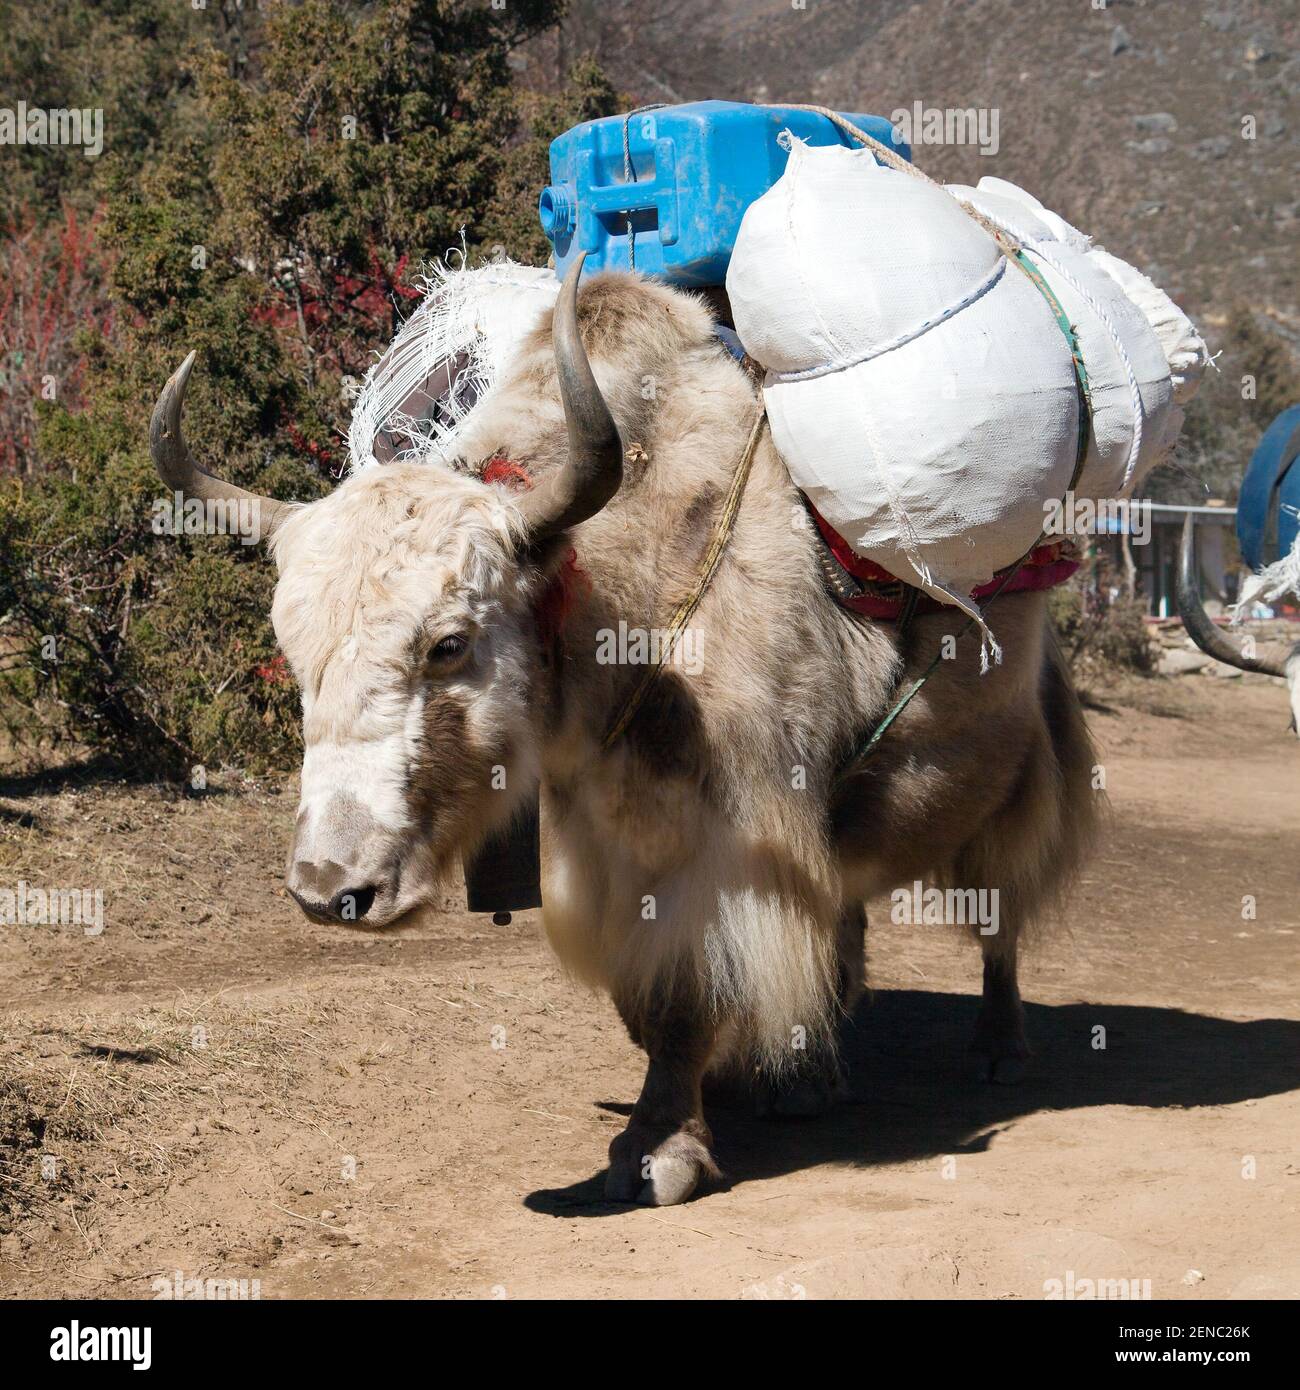 White Yak - bos grunniens oder bos mutus - ein Der Weg zum Everest-Basislager und zum Pumo ri - Nepal Stockfoto